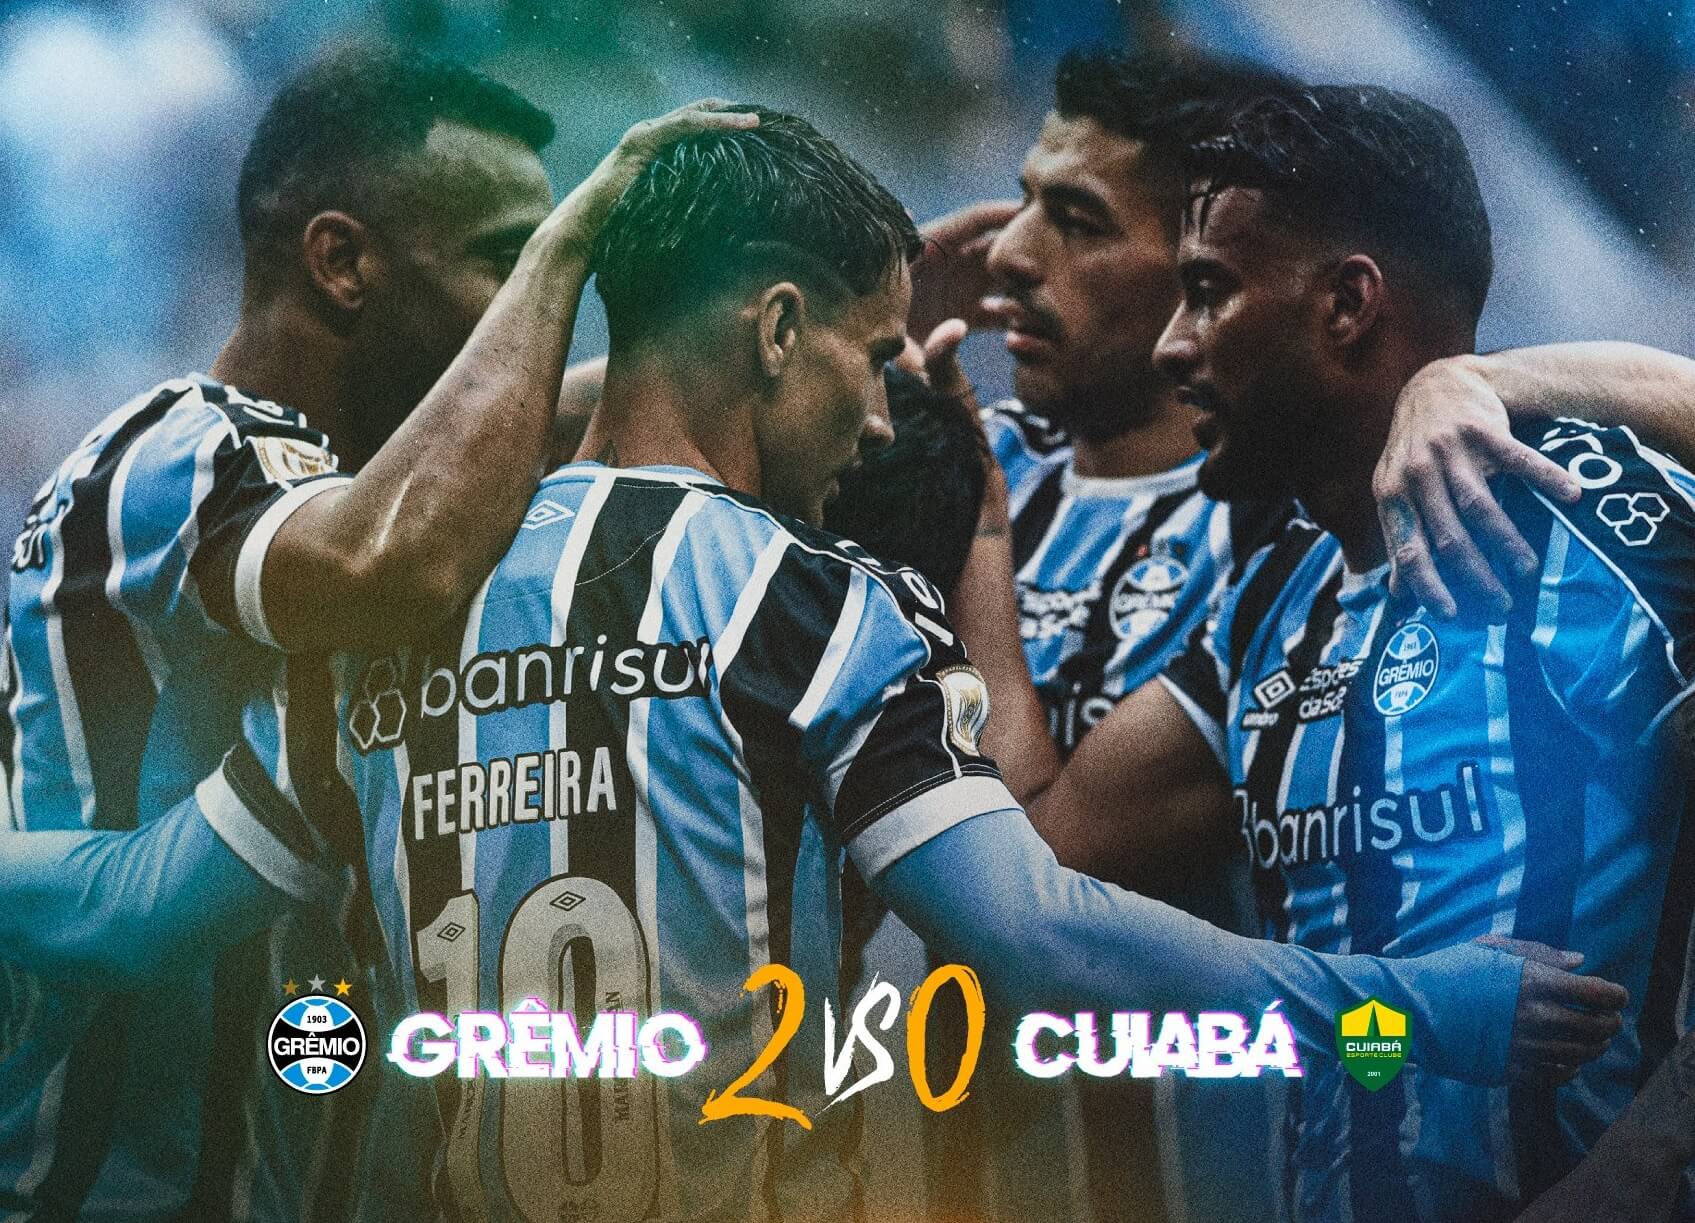 Grêmio vs Fortaleza: A Clash of Titans on the Field